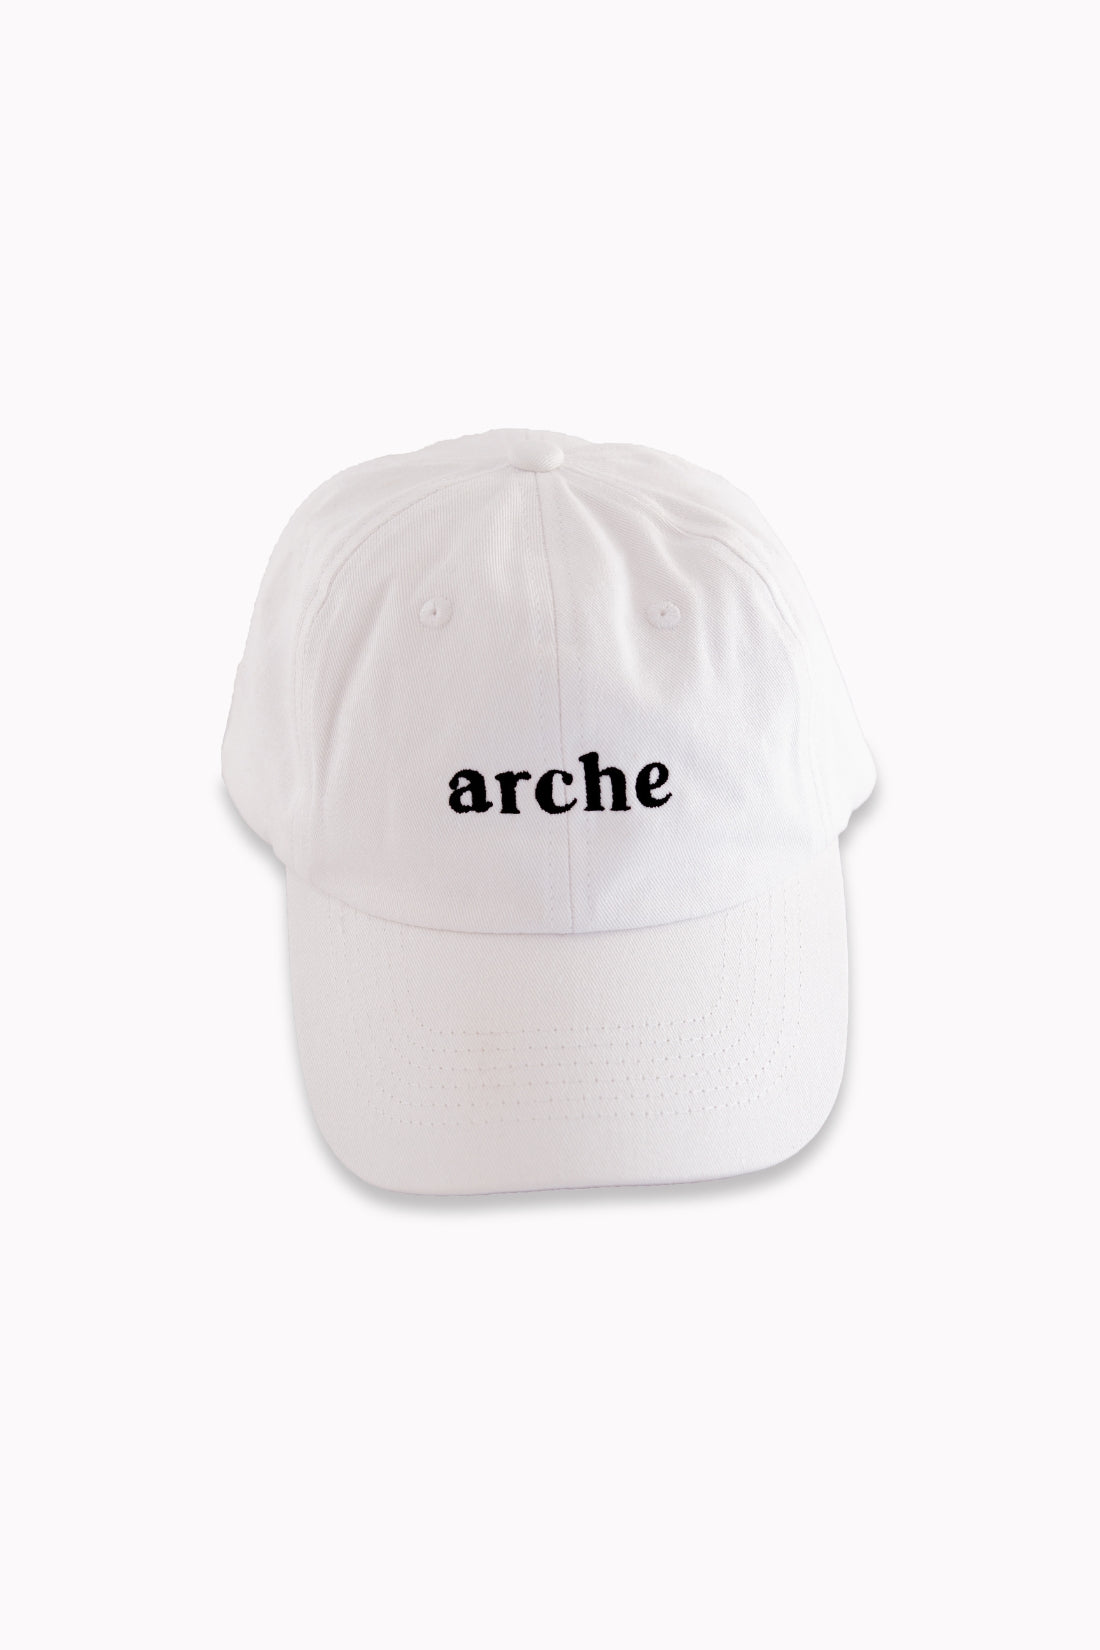 Arche Cap | White